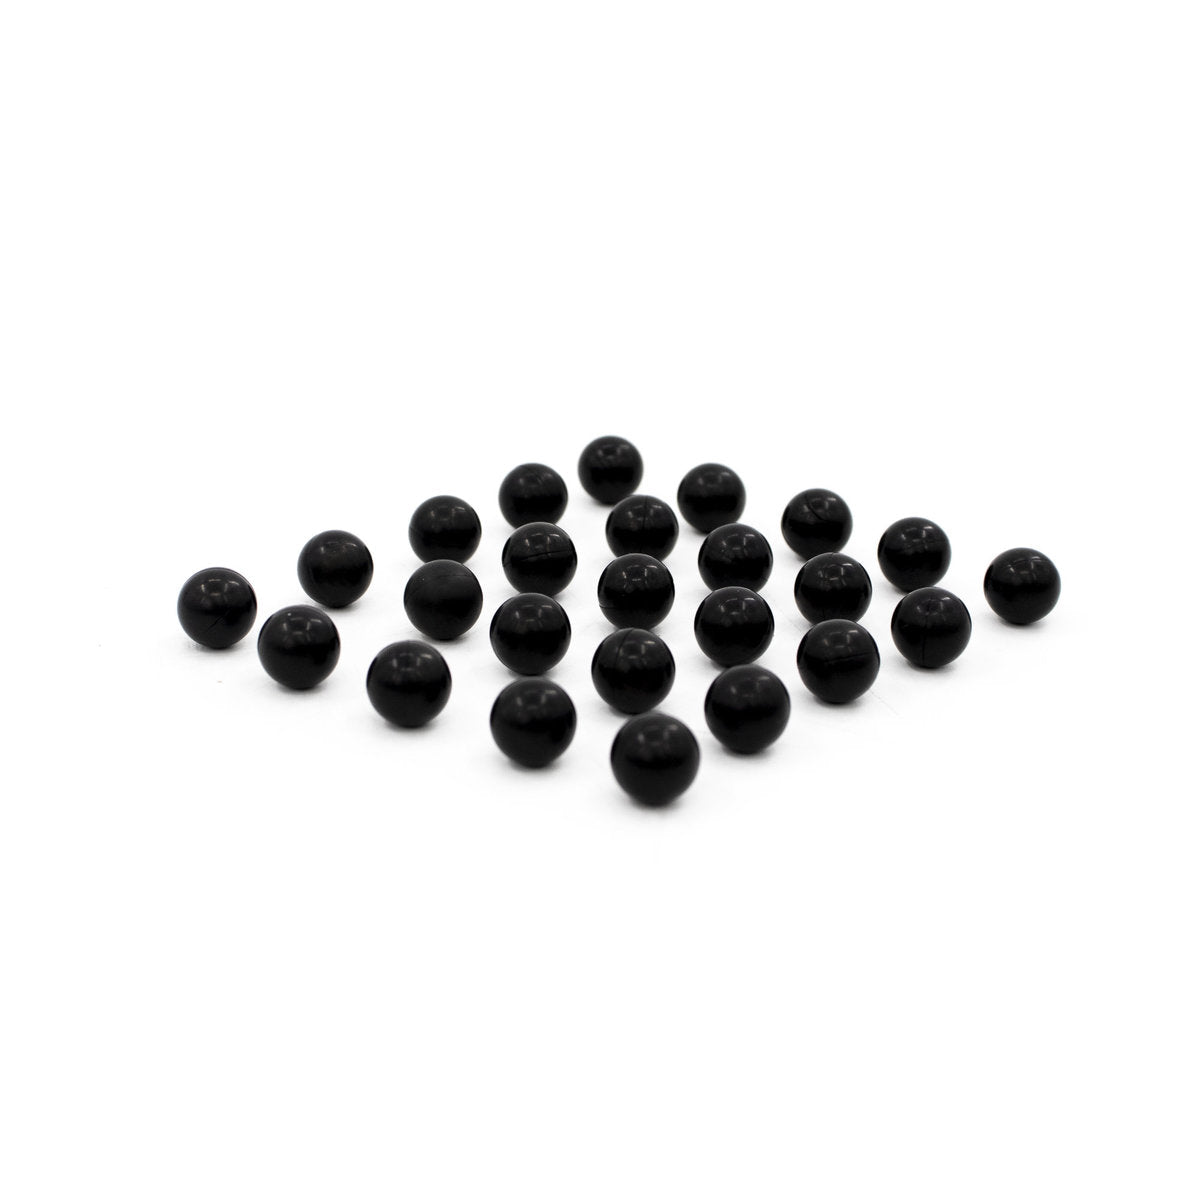 Bolas de Goma de Alta Densidad - Hard Rubber Balls Cal. 0.43 (0.875 gr)